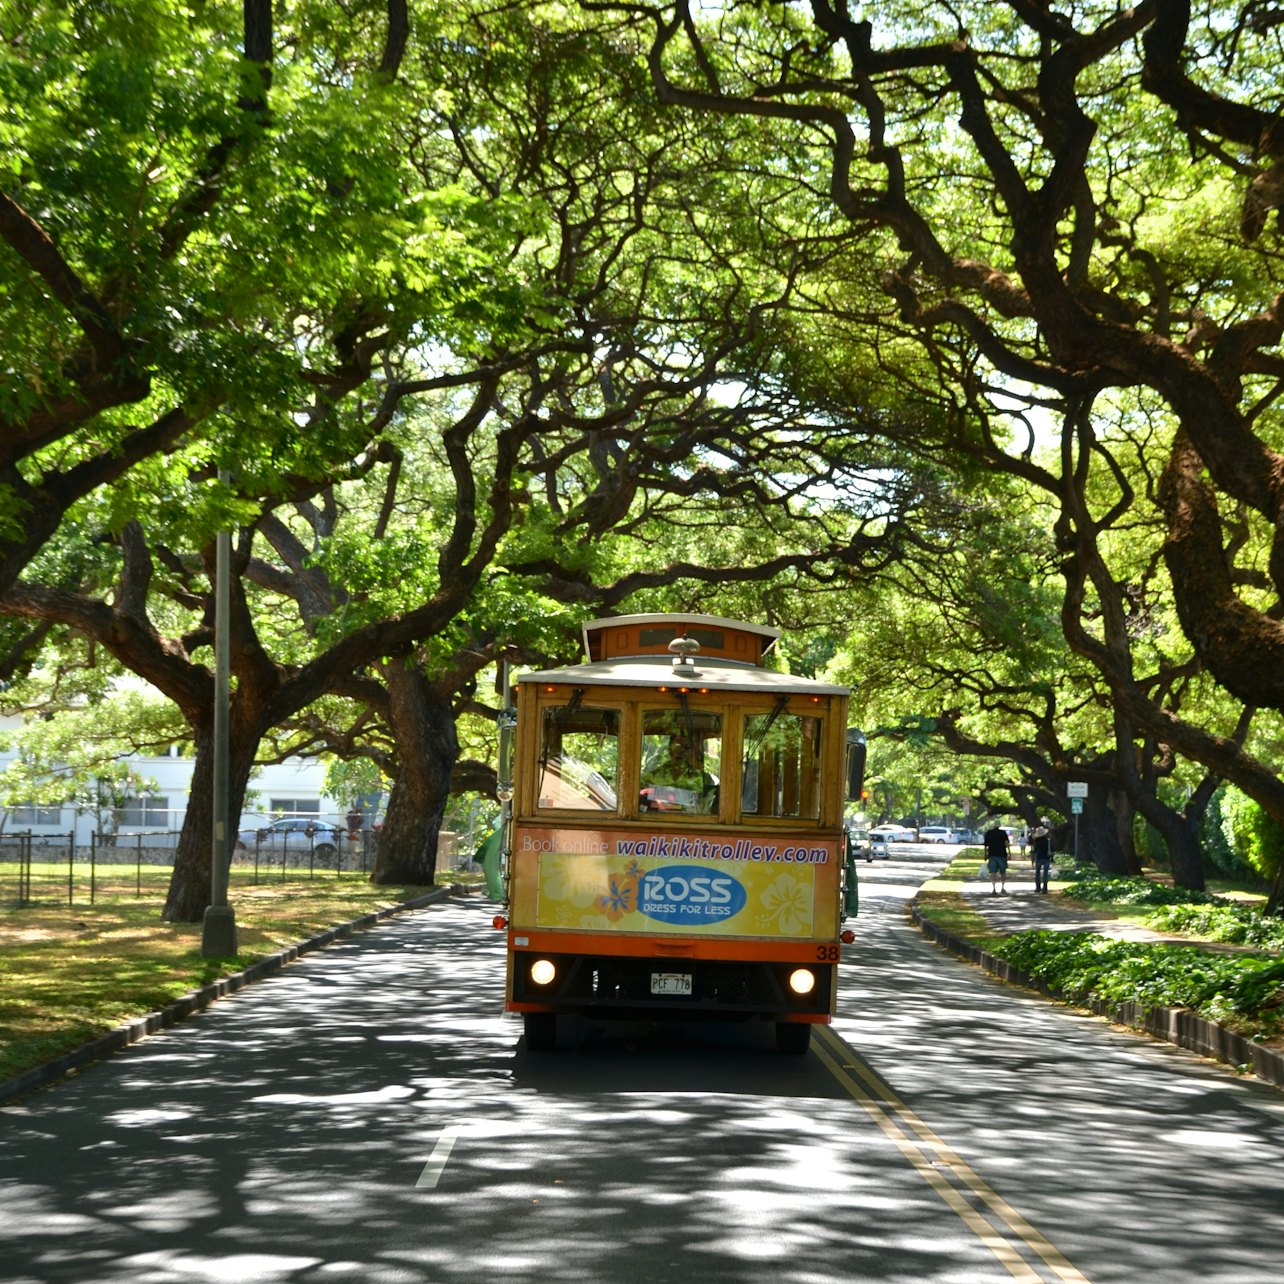 Waikiki Trolley - Acomodações em Honolulu